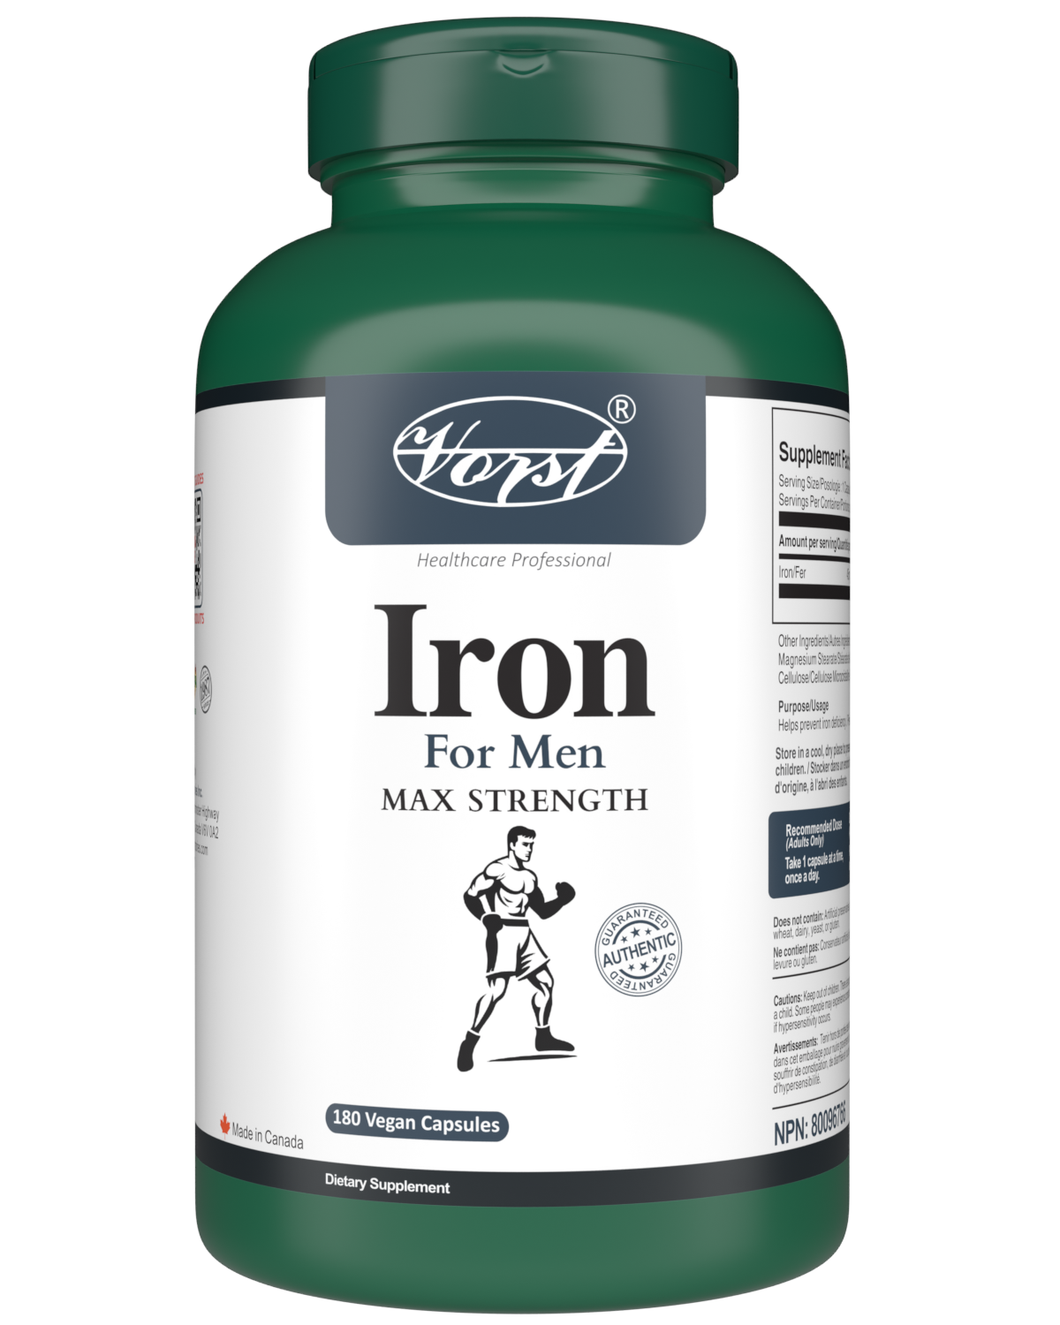 Iron for Men 180 Vegan Capsules